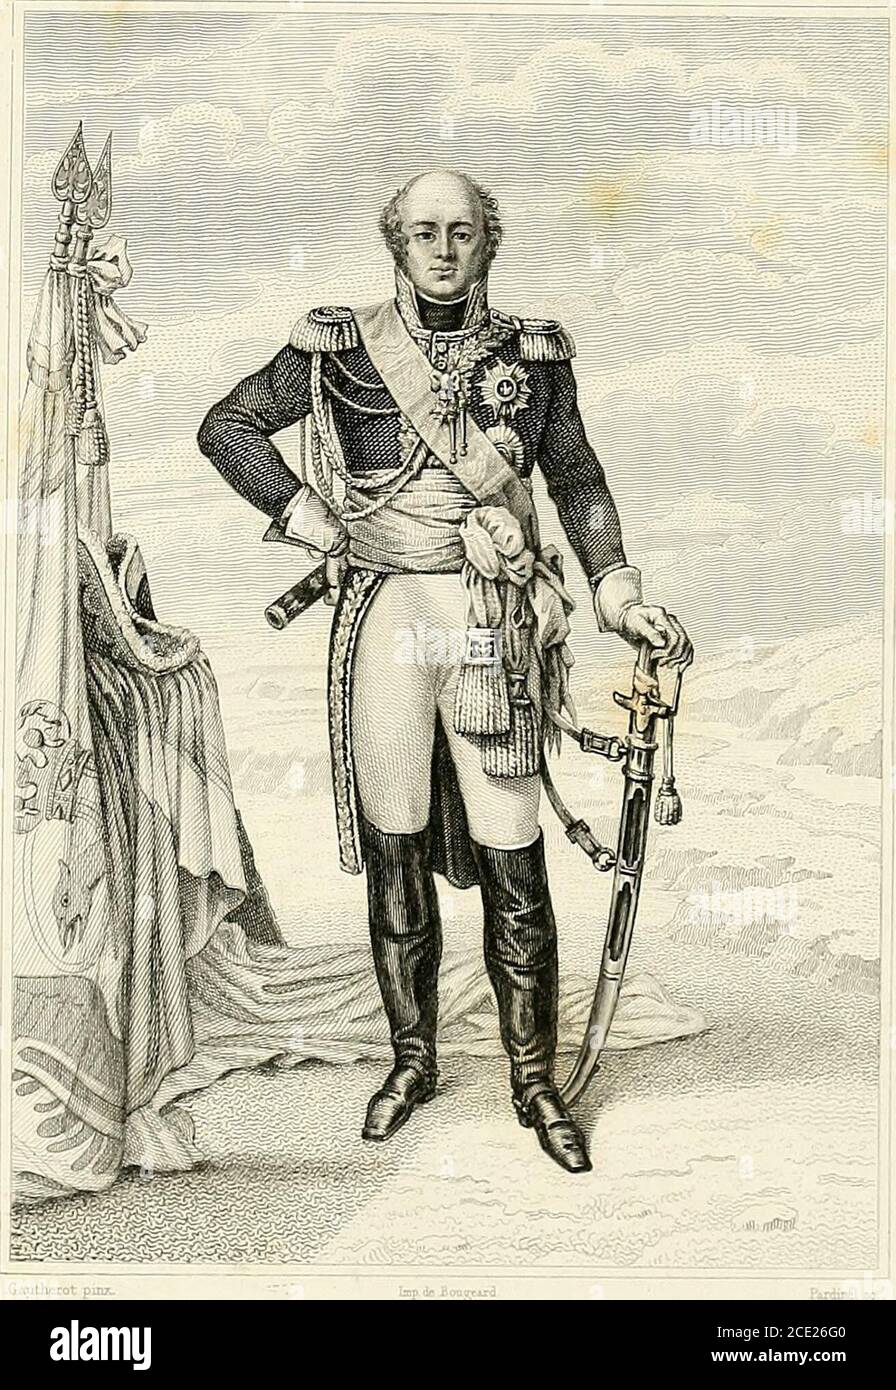 . Musée de Versailles : avec un texte historique . DAVOUST -gsiJO 90000 Davoust (Louis-Nicolas), duc dAuerstaedt, prince dEckmùhl, pair etmaréchal de France, né à Aunoux (Yonne), le ro mai 1770, dune famille noble,entra très jeune à lécole dAuxerre, puis à celle de Paris, où il devint le cama-rade de Bonaparte, et fut créé sous-lieutenant en 1787. Quand la révolutioneut éclaté, il partit comme volontaire, malgré les principes monarchiques deses parents, se trouva des premiers au camp de Maulde en qualité de chef debataillon, et fit la campagne de Belgique avec Dumouriez, qui lui conféra legrad Stock Photo